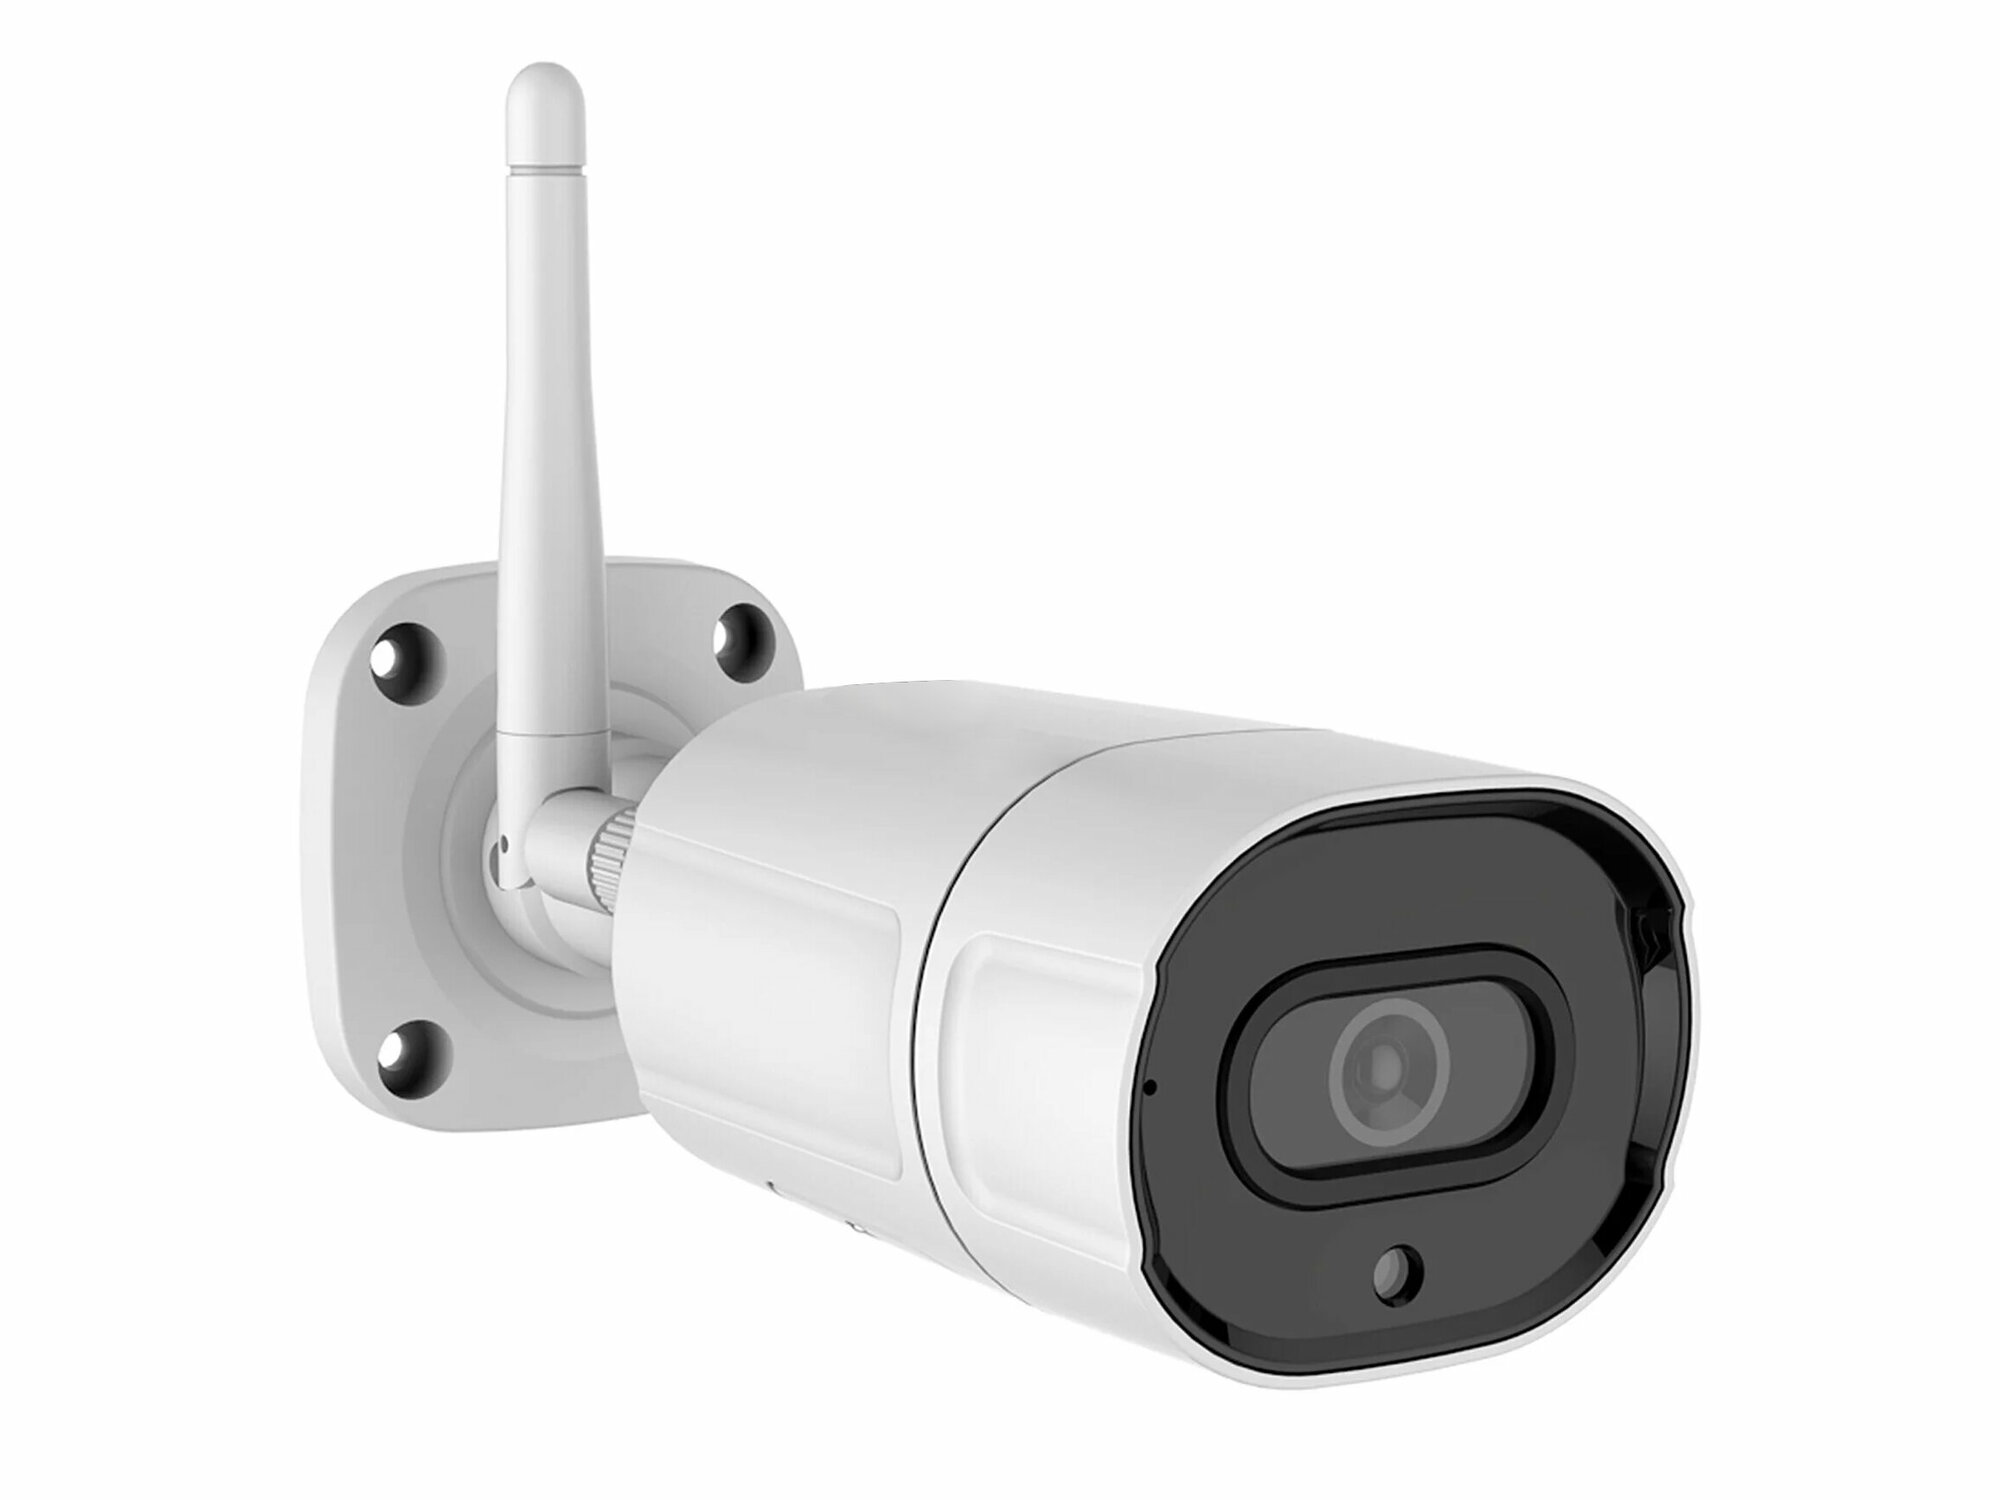 Link 402-ASW8-8GH IP-4k (8Mp) камера - камера видеонаблюдения уличная. Высокое качество 4К (8 Мп, 3840x2160 пикс).